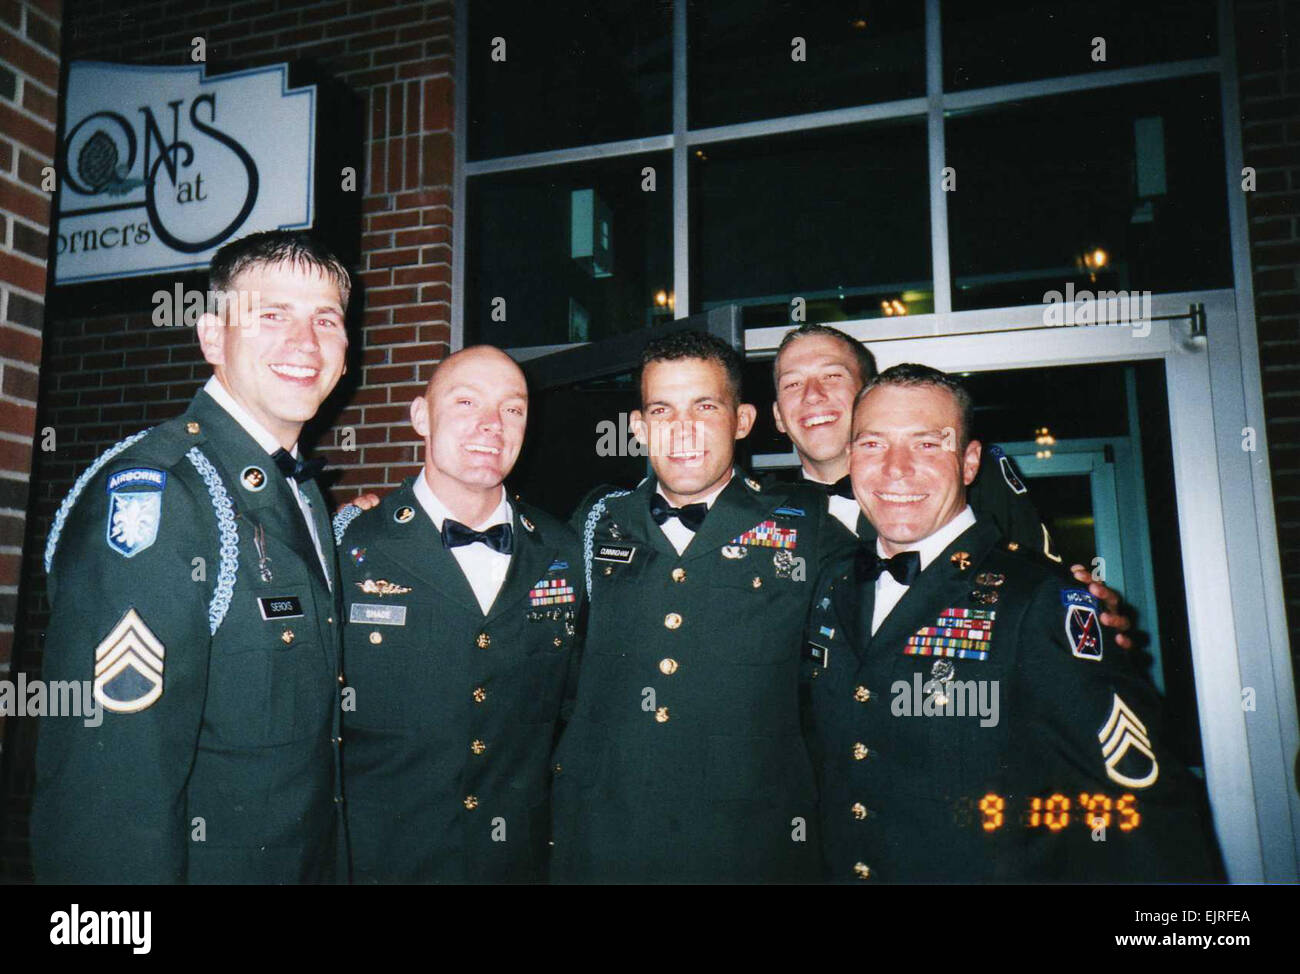 Ein persönliches Foto von Sergeant 1. Klasse Jared C. Monti, der erste Soldat Empfänger für Aktionen in Afghanistan/Operation Enduring Freedom.  Um mehr zu erfahren, besuchen Sie: / Medalofhonor/Monti/Medalofhonor/Monti Stockfoto